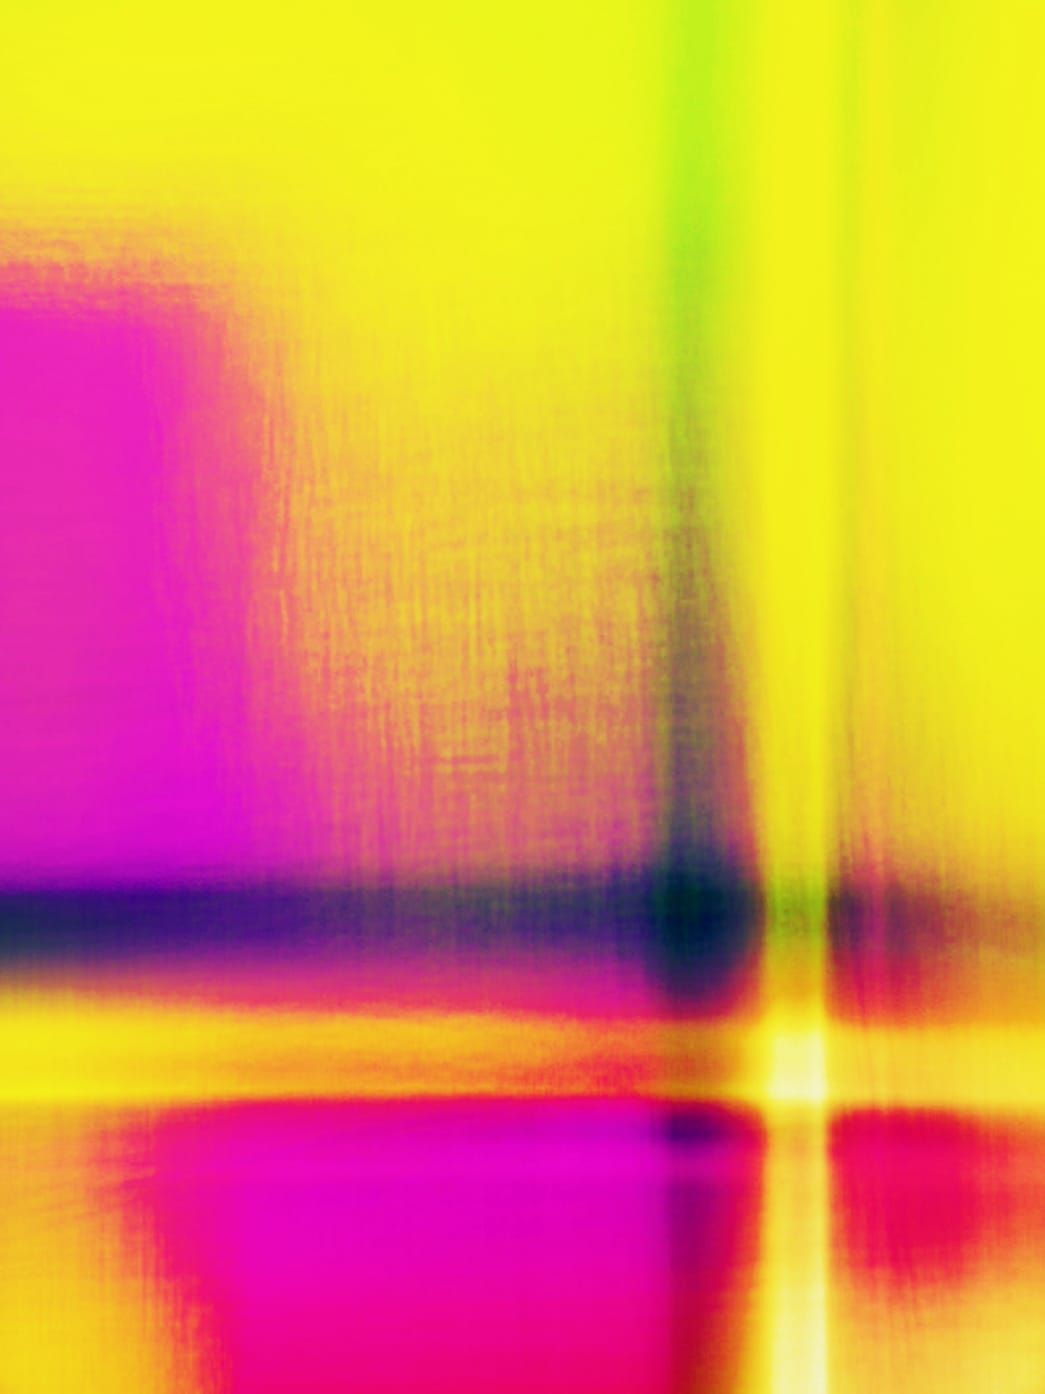 Fotografia, scanografia di Michael Monney alias acylmx, immagine astratta in giallo, rosa e viola.